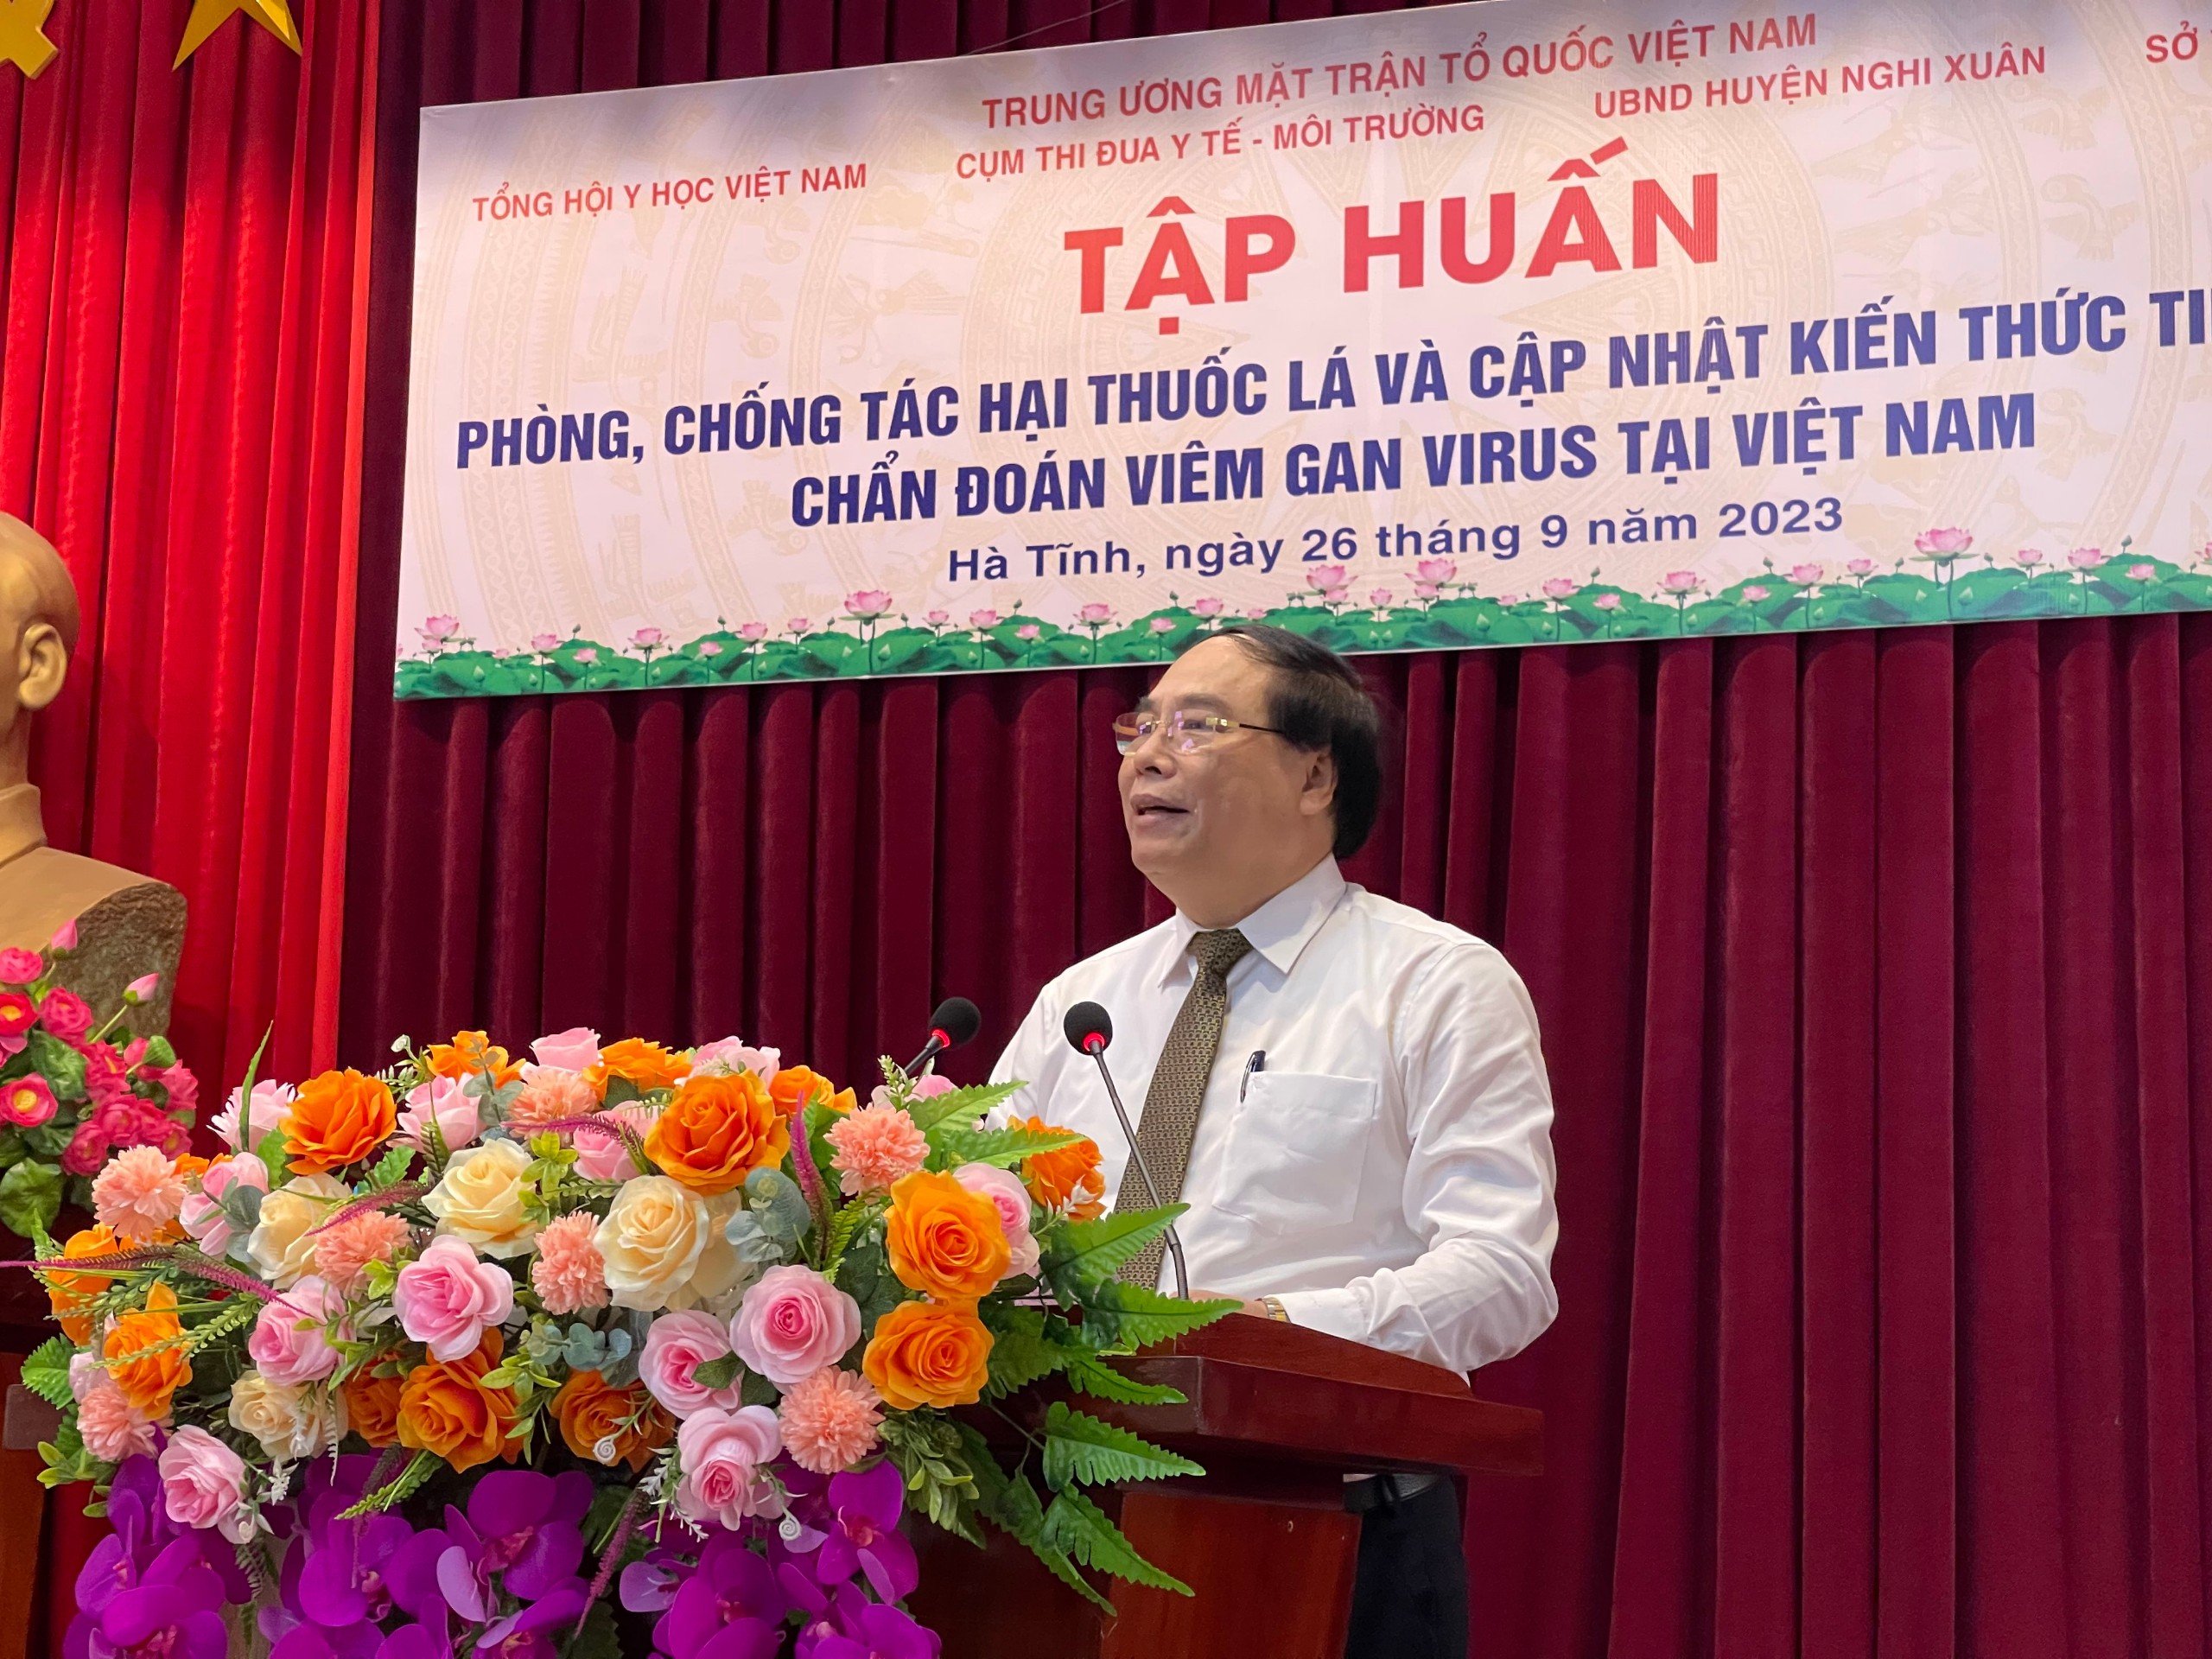 Chương trình đào tạo liên tục, khám chữa bệnh miễn phí và tặng quà cho người dân huyện Nghi Xuân, tỉnh Hà Tĩnh